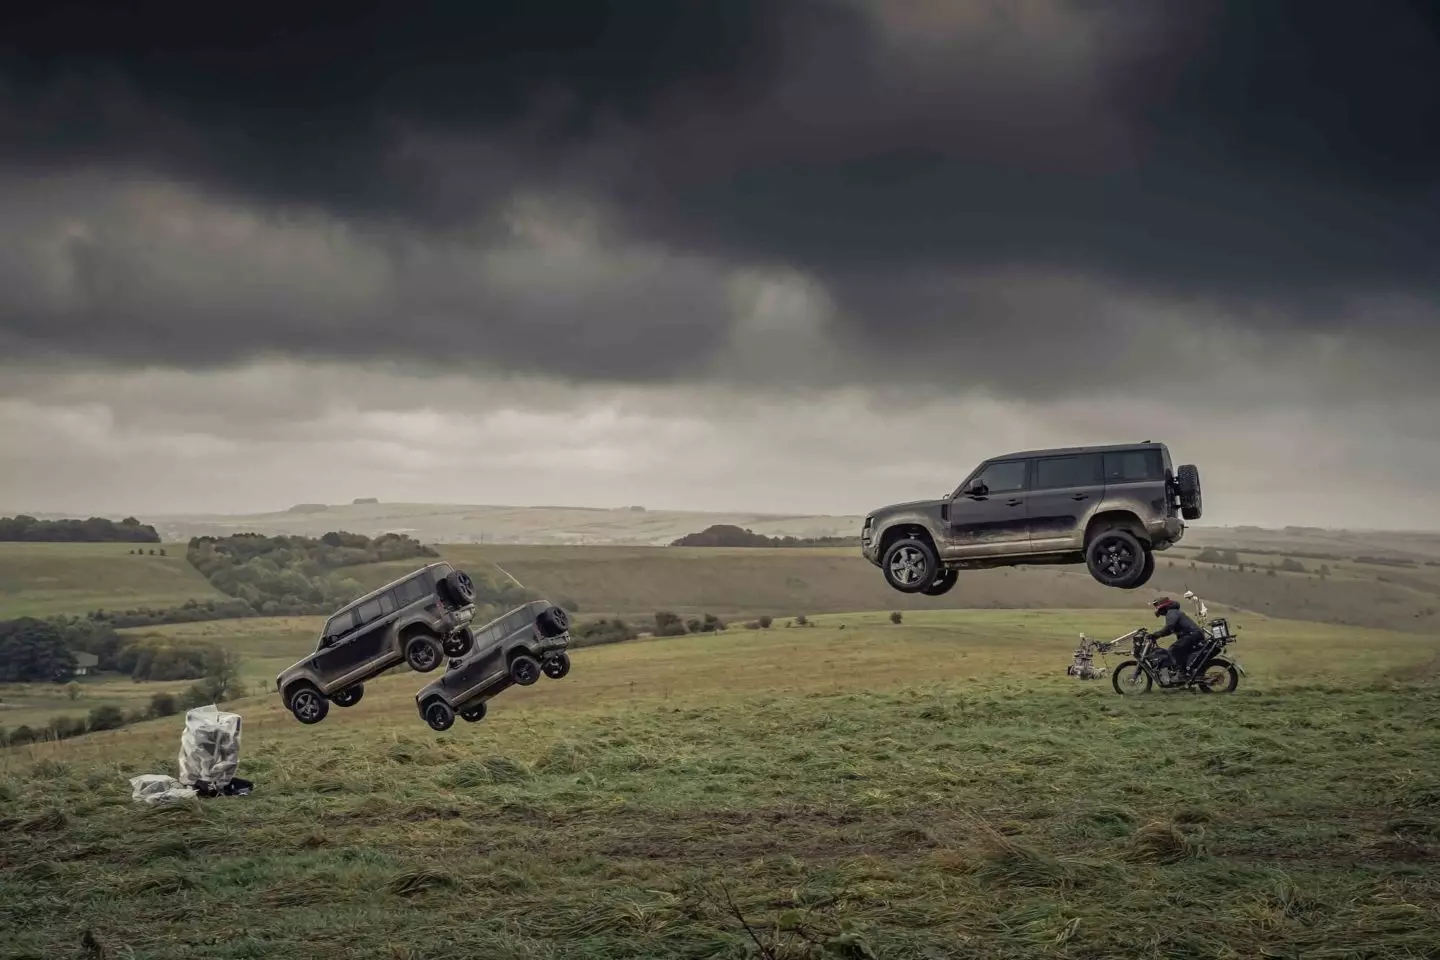 Fillimi i Ftohtë. Land Rover ia bën jetën të zezë Defender. A mund ta marrë atë?